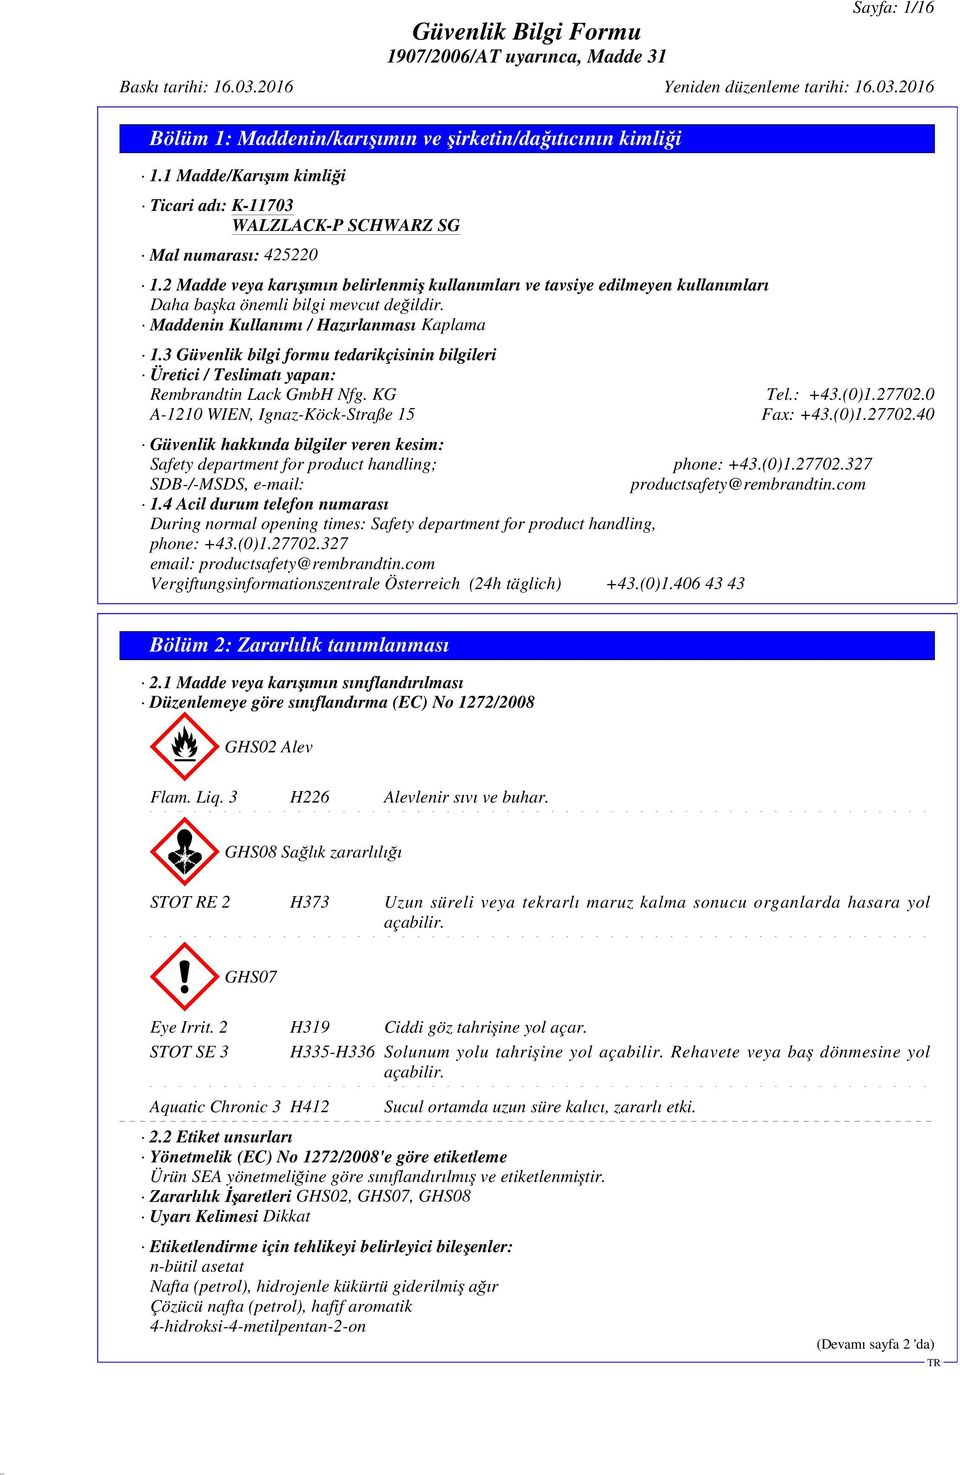 3 Güvenlik bilgi formu tedarikçisinin bilgileri Üretici / Teslimatı yapan: Rembrandtin Lack GmbH Nfg. KG Tel.: +43.(0)1.27702.